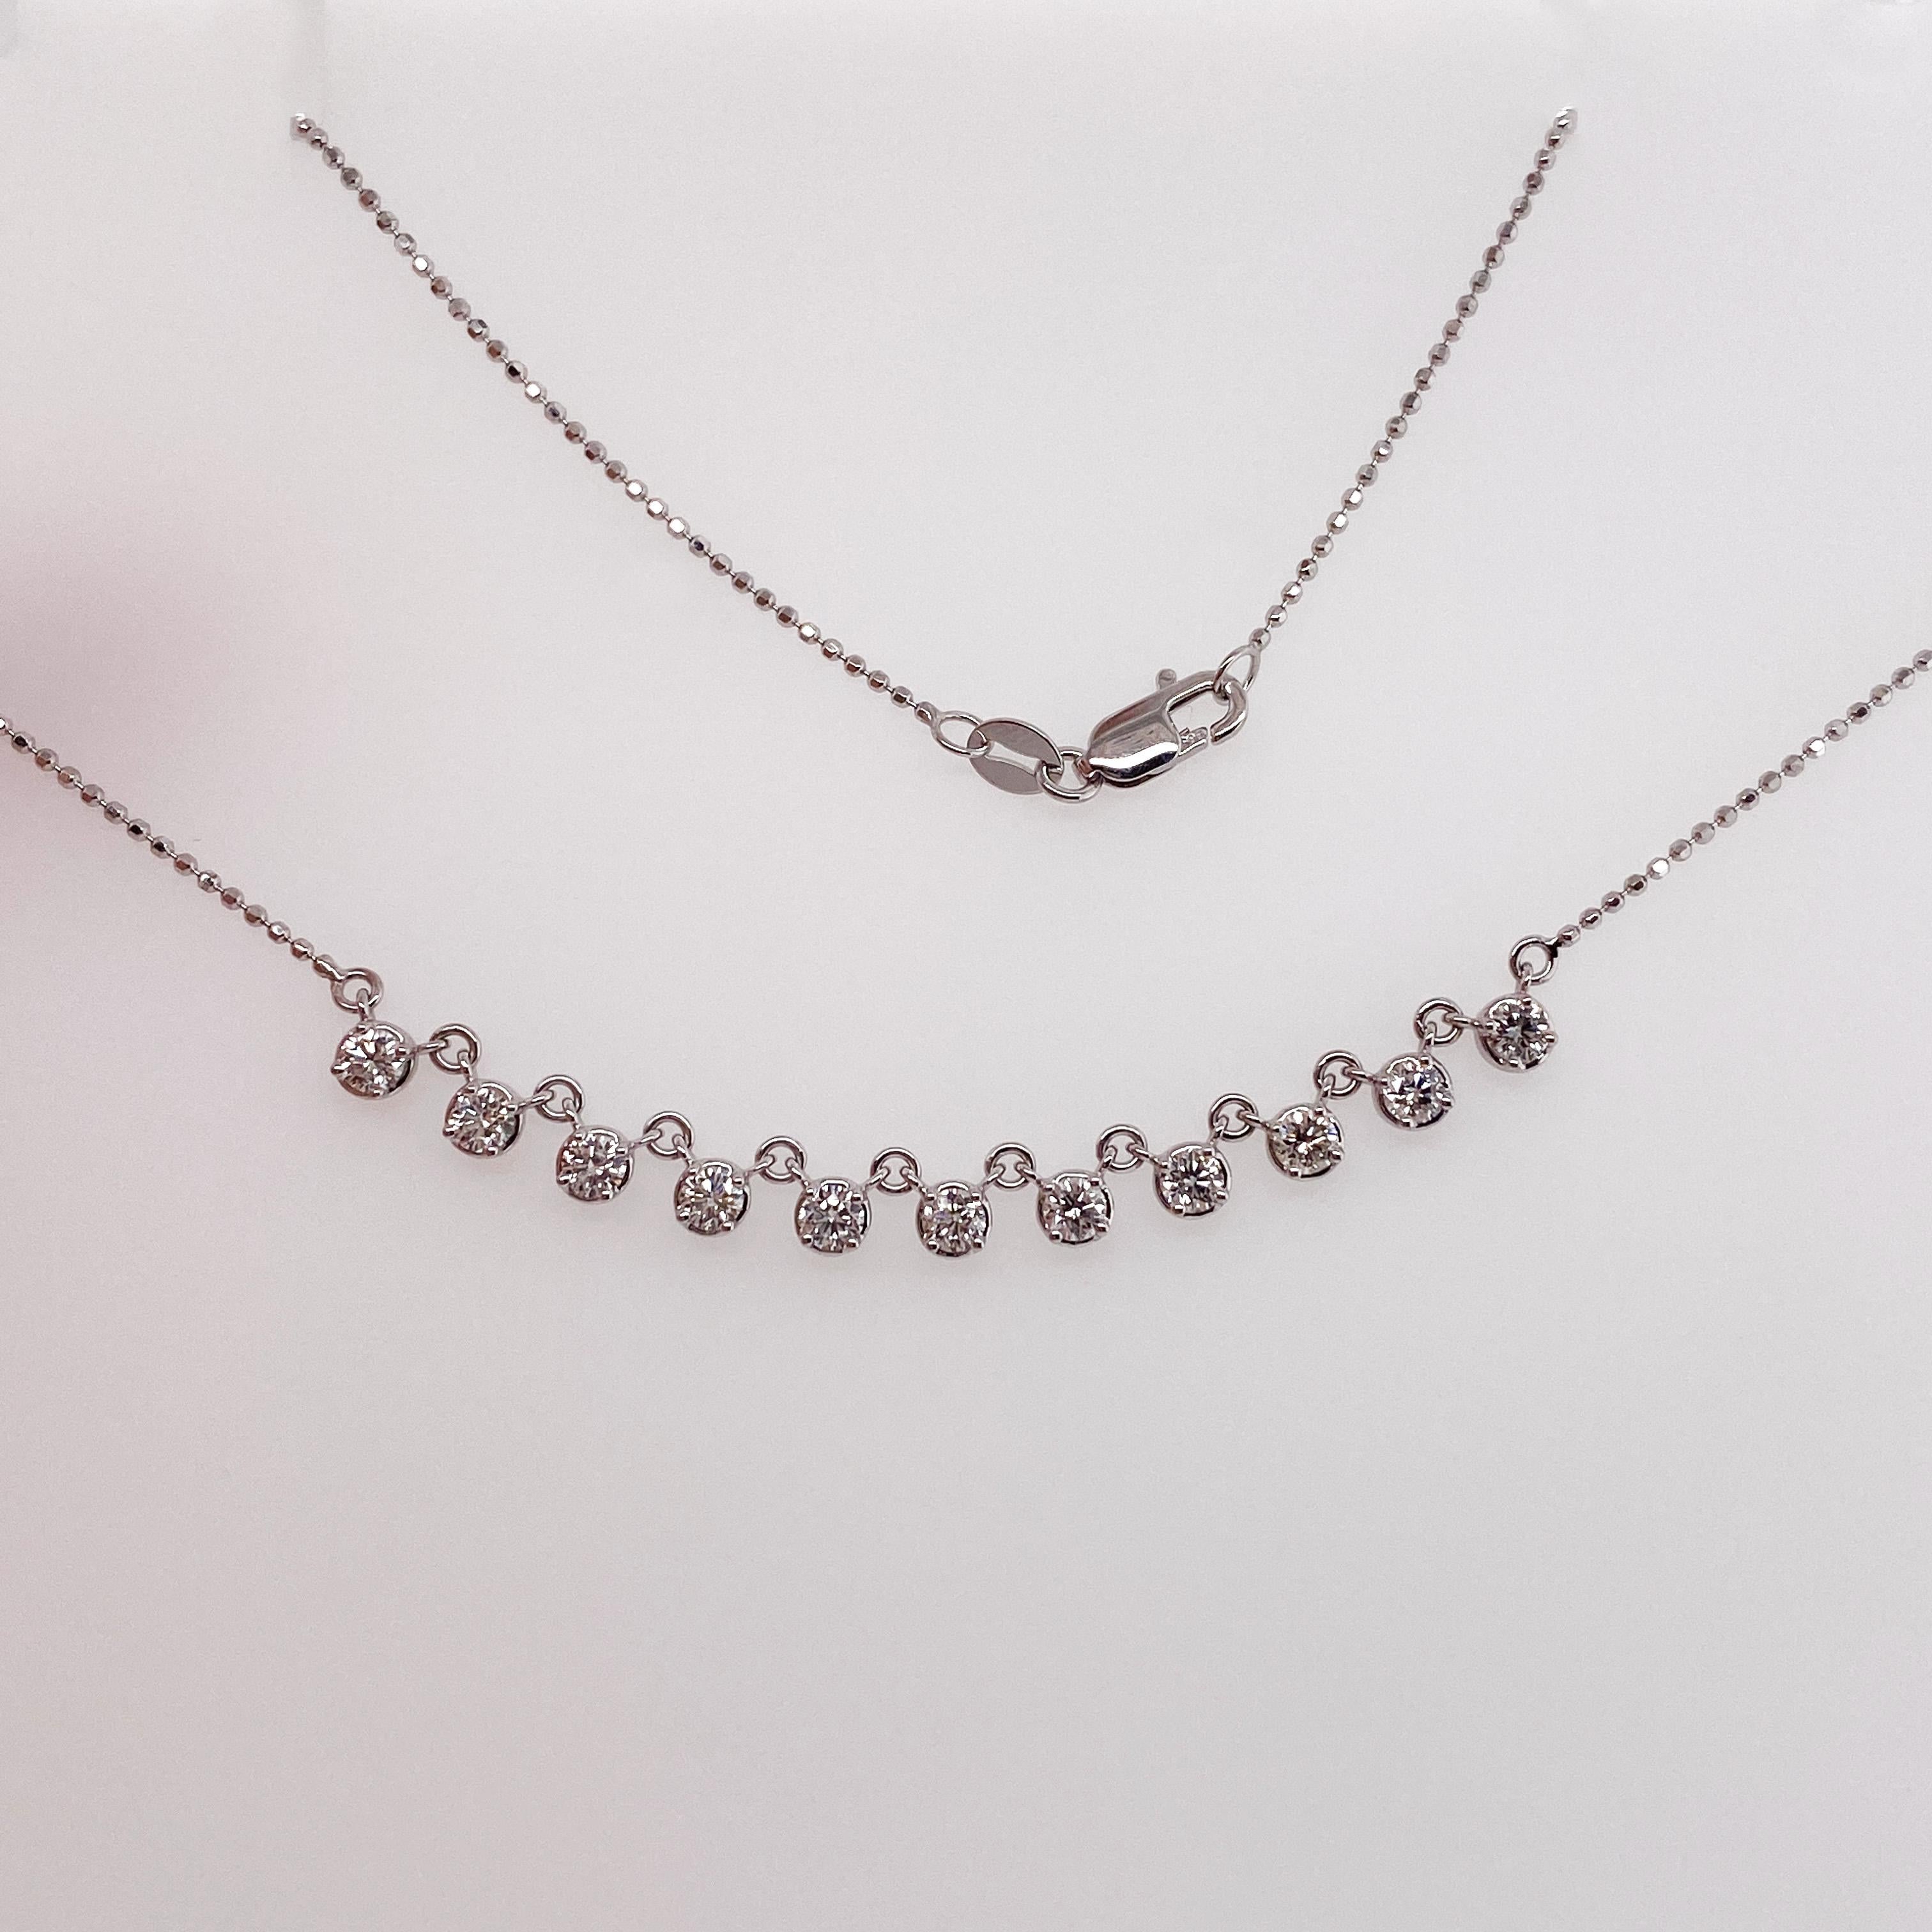 wedding diamond necklace importer -china -china -forum -blog -wikipedia -.cn -.gov -alibaba